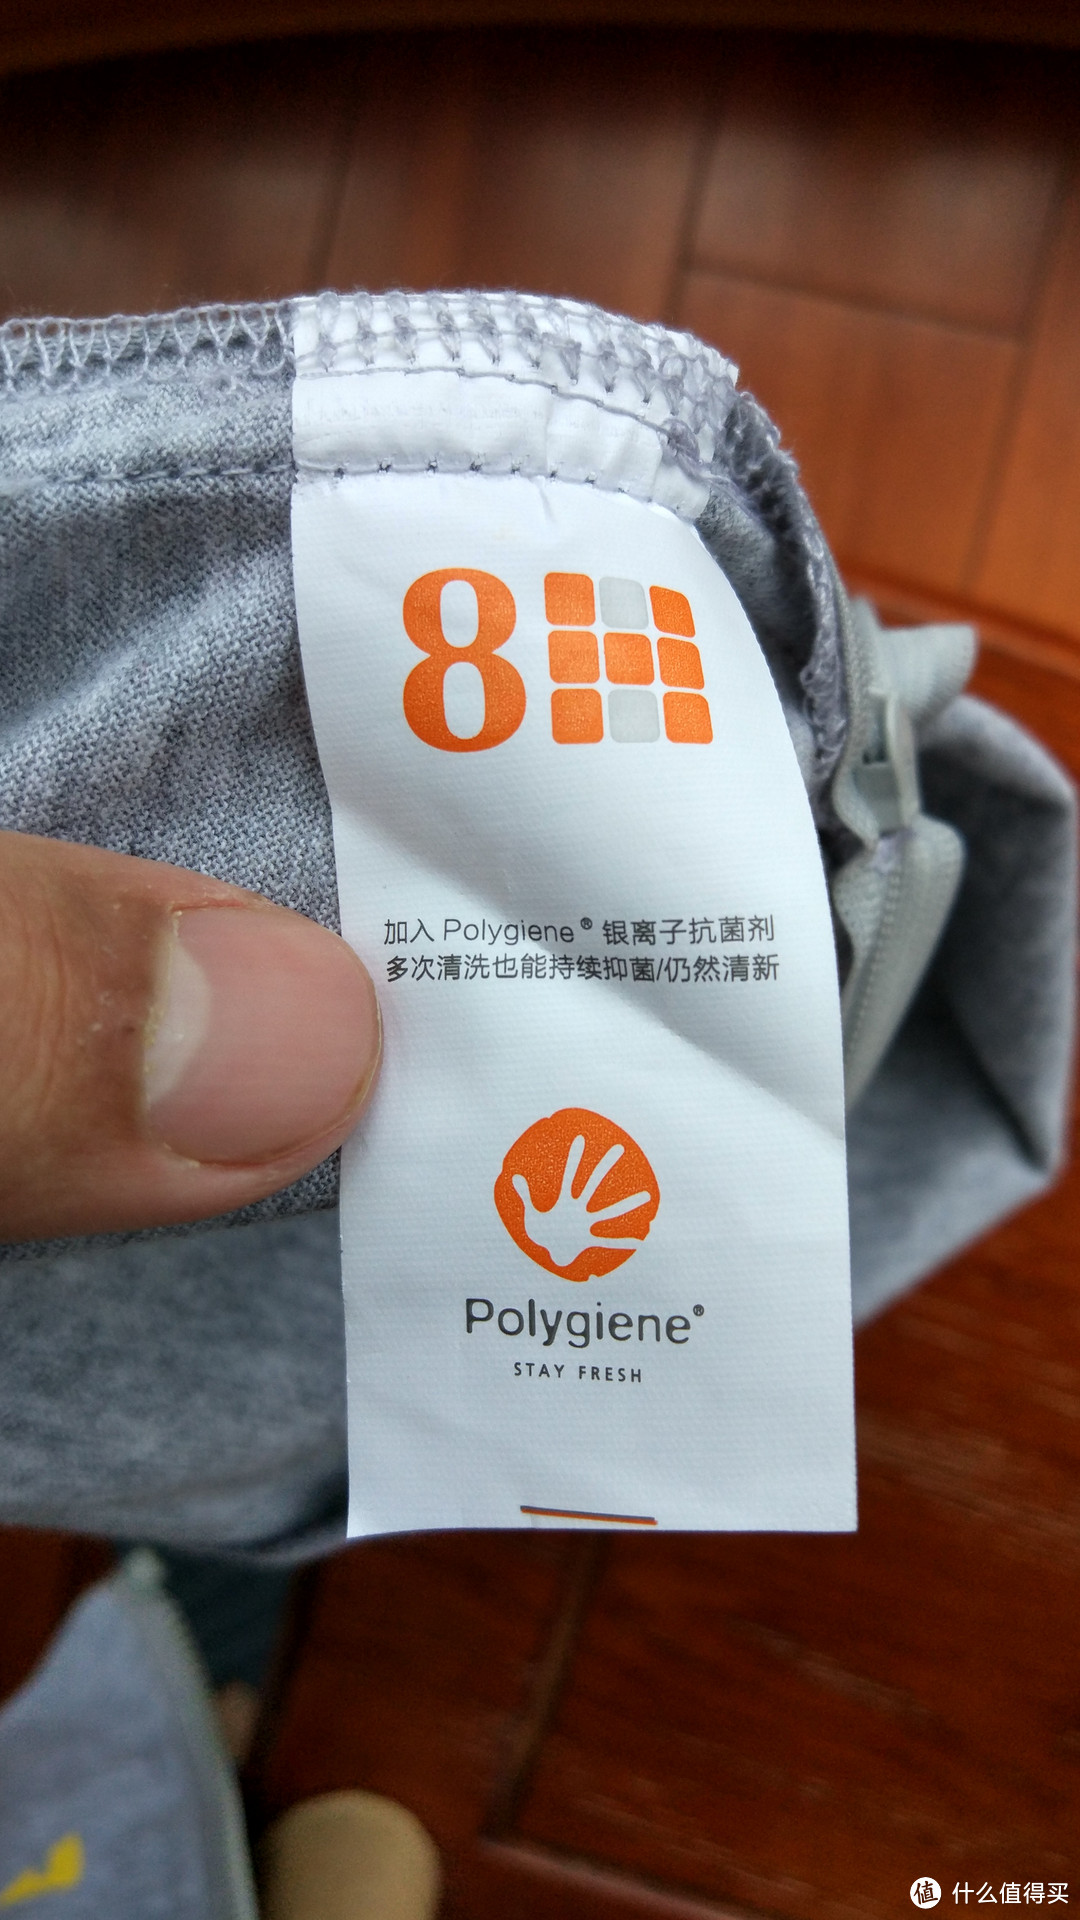 枕头外套加入了Polygiene银离子抗菌剂